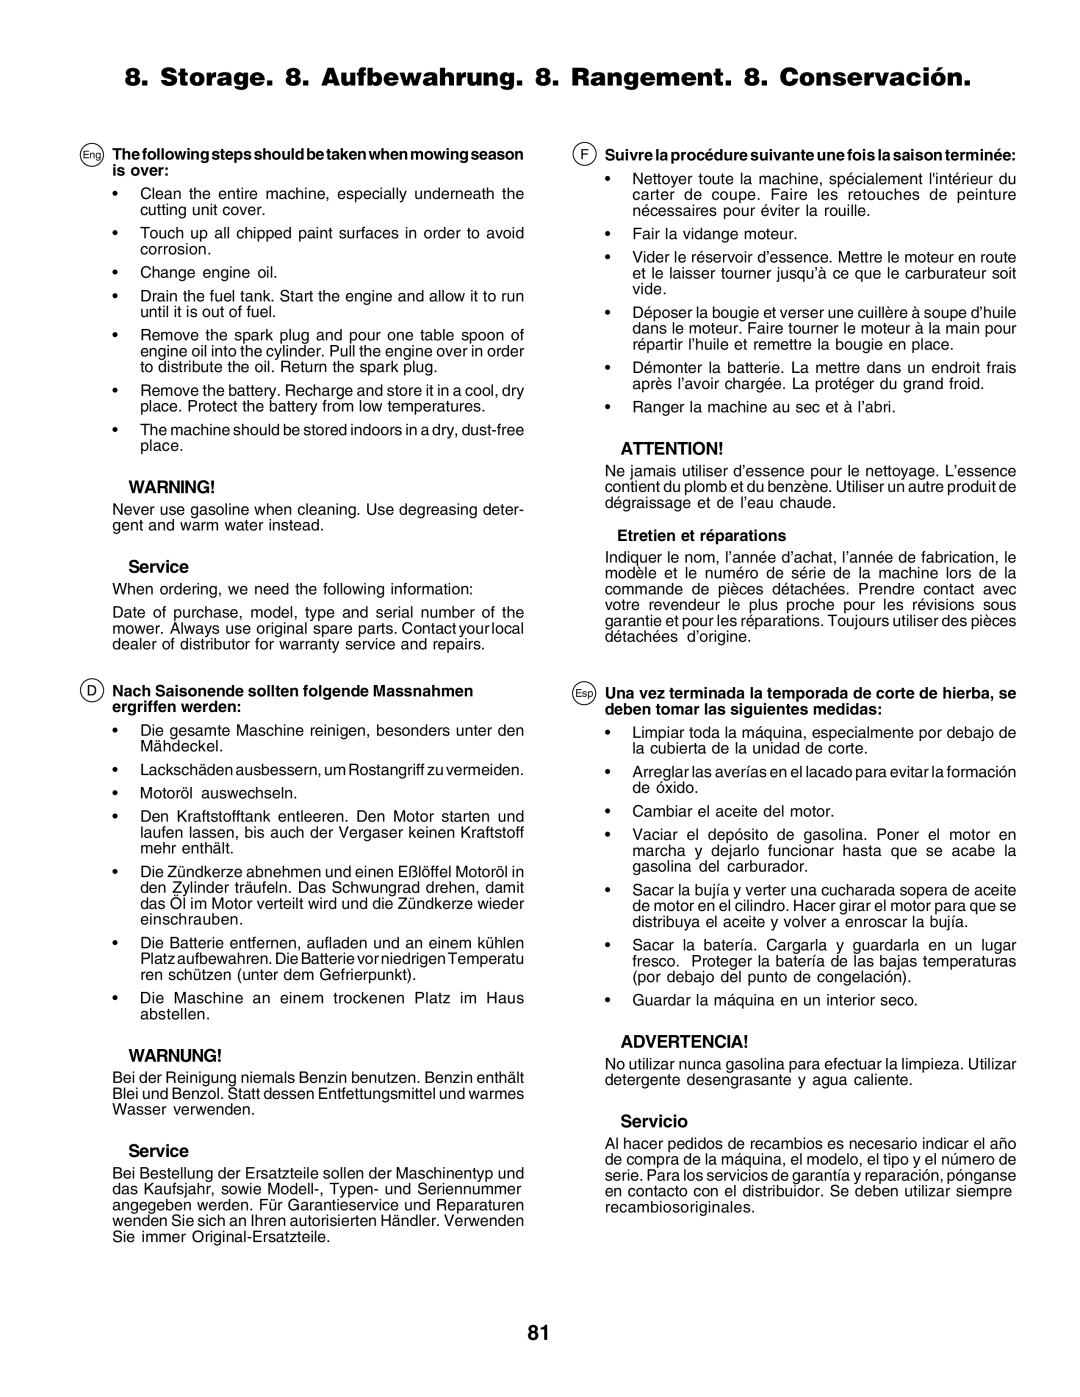 Husqvarna CT135 instruction manual Service, Warnung, Advertencia, Servicio, Etretien et réparations 